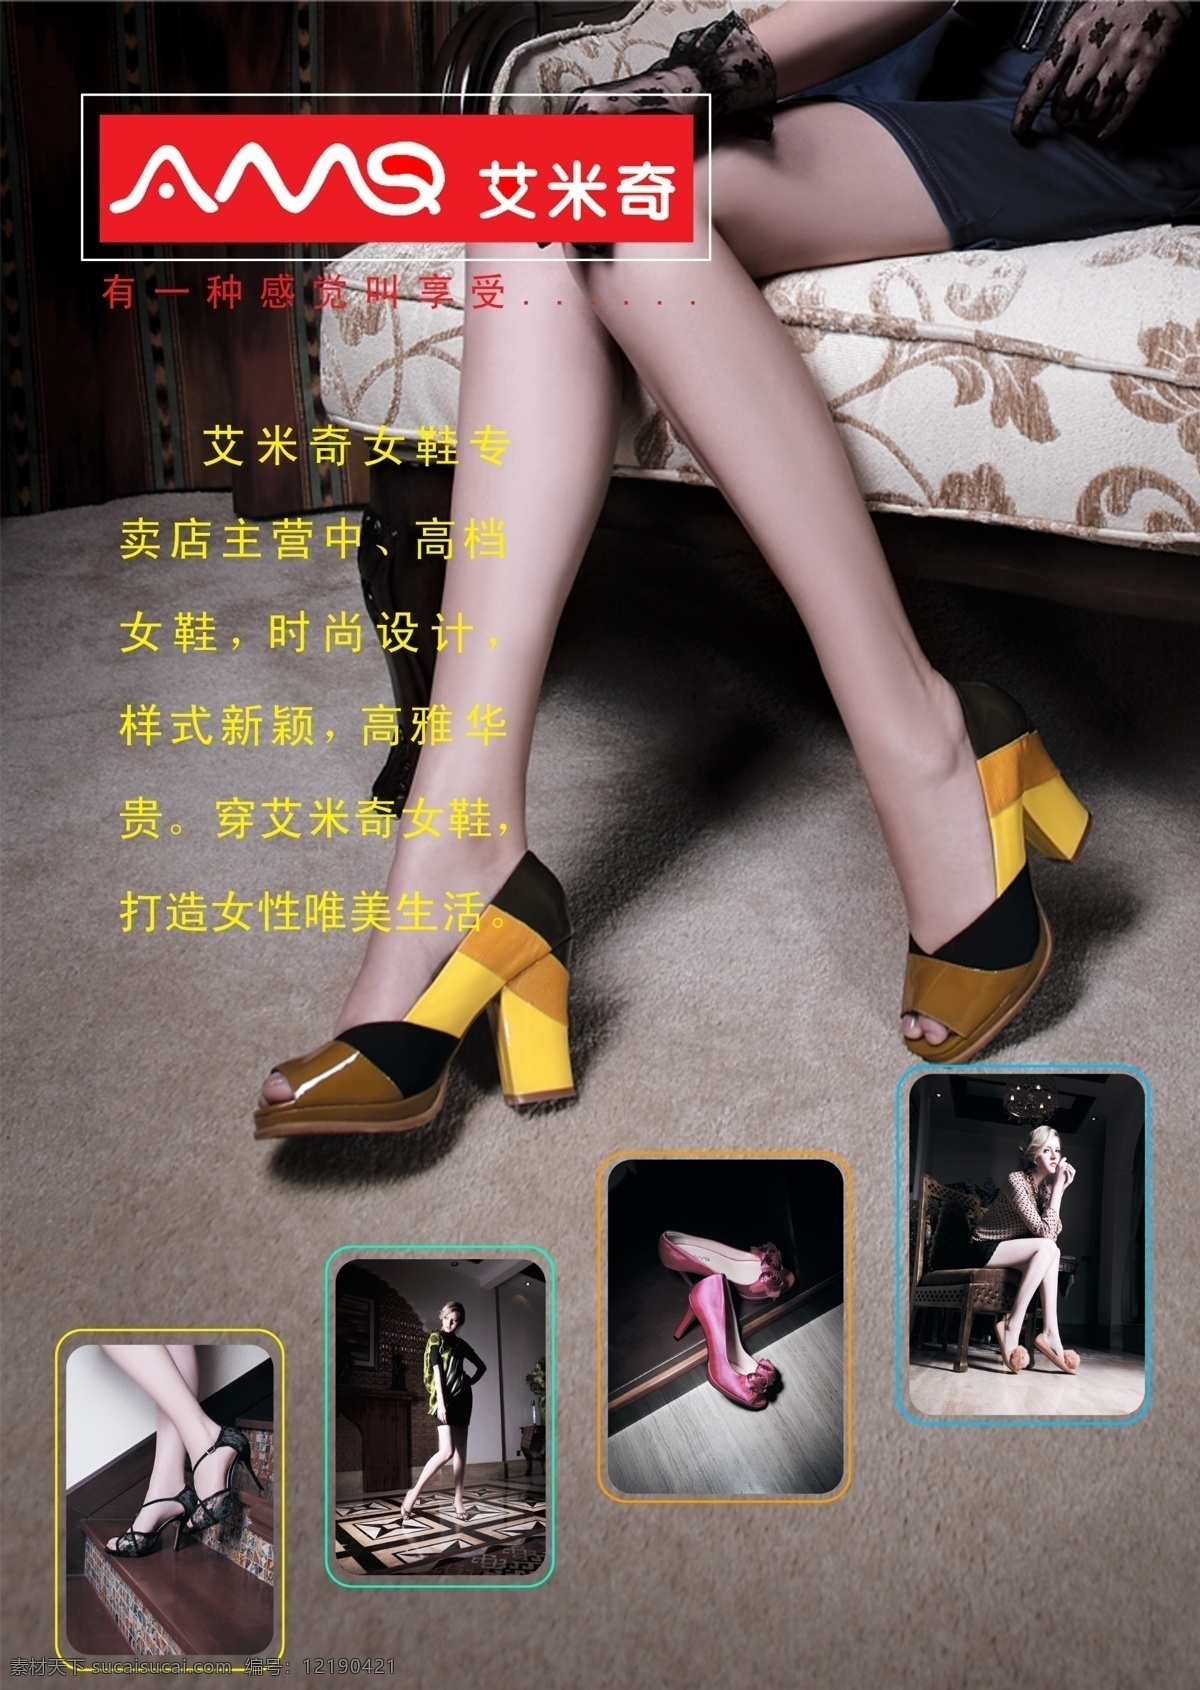 艾米奇鞋 皮鞋 鞋子海报 广告设计模板 源文件